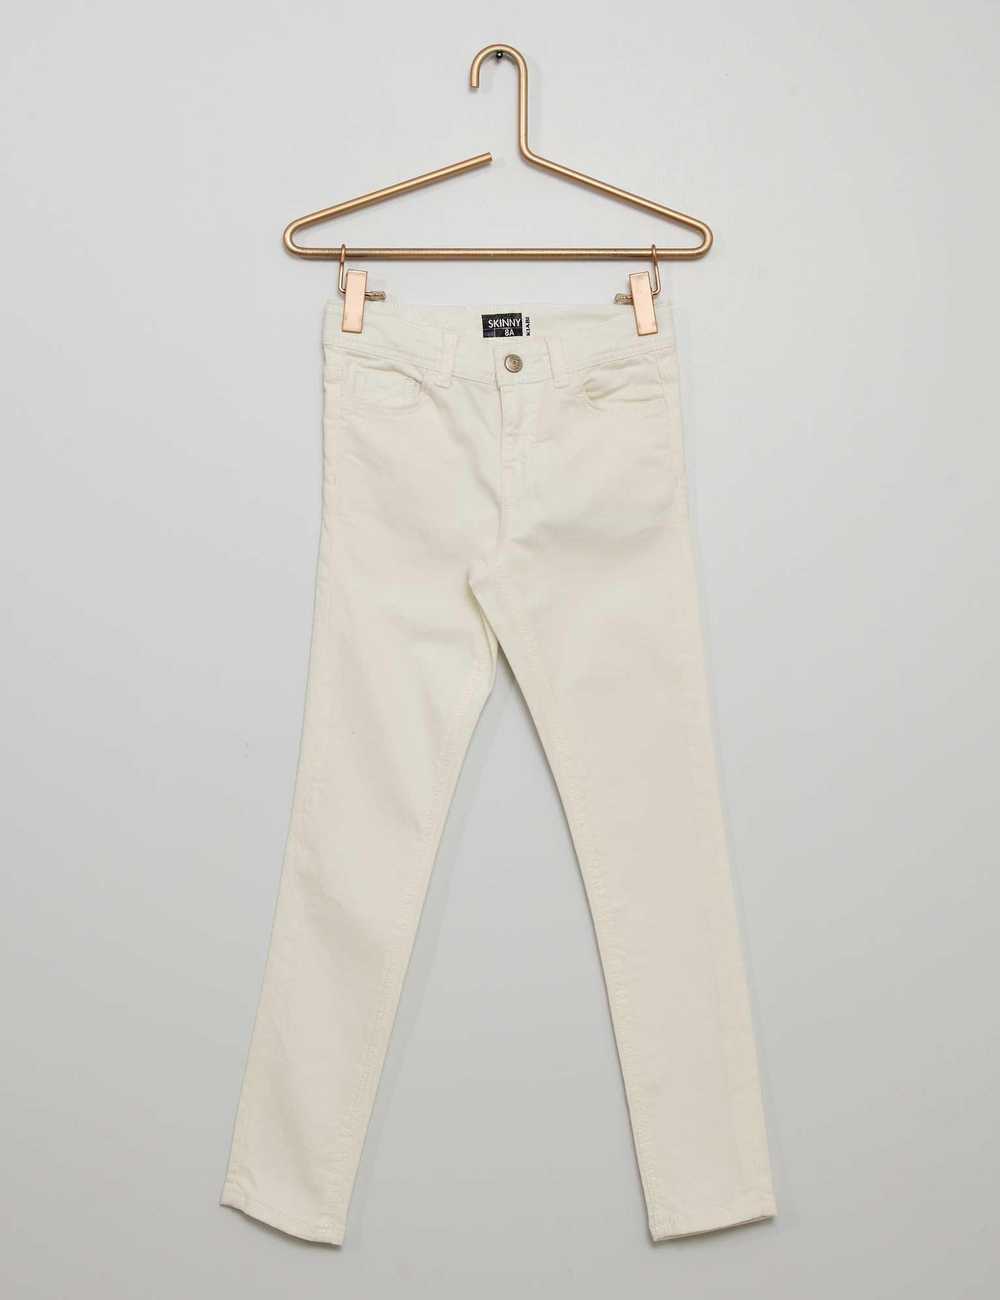 Buy Skinny trousers Online in Dubai & the UAE